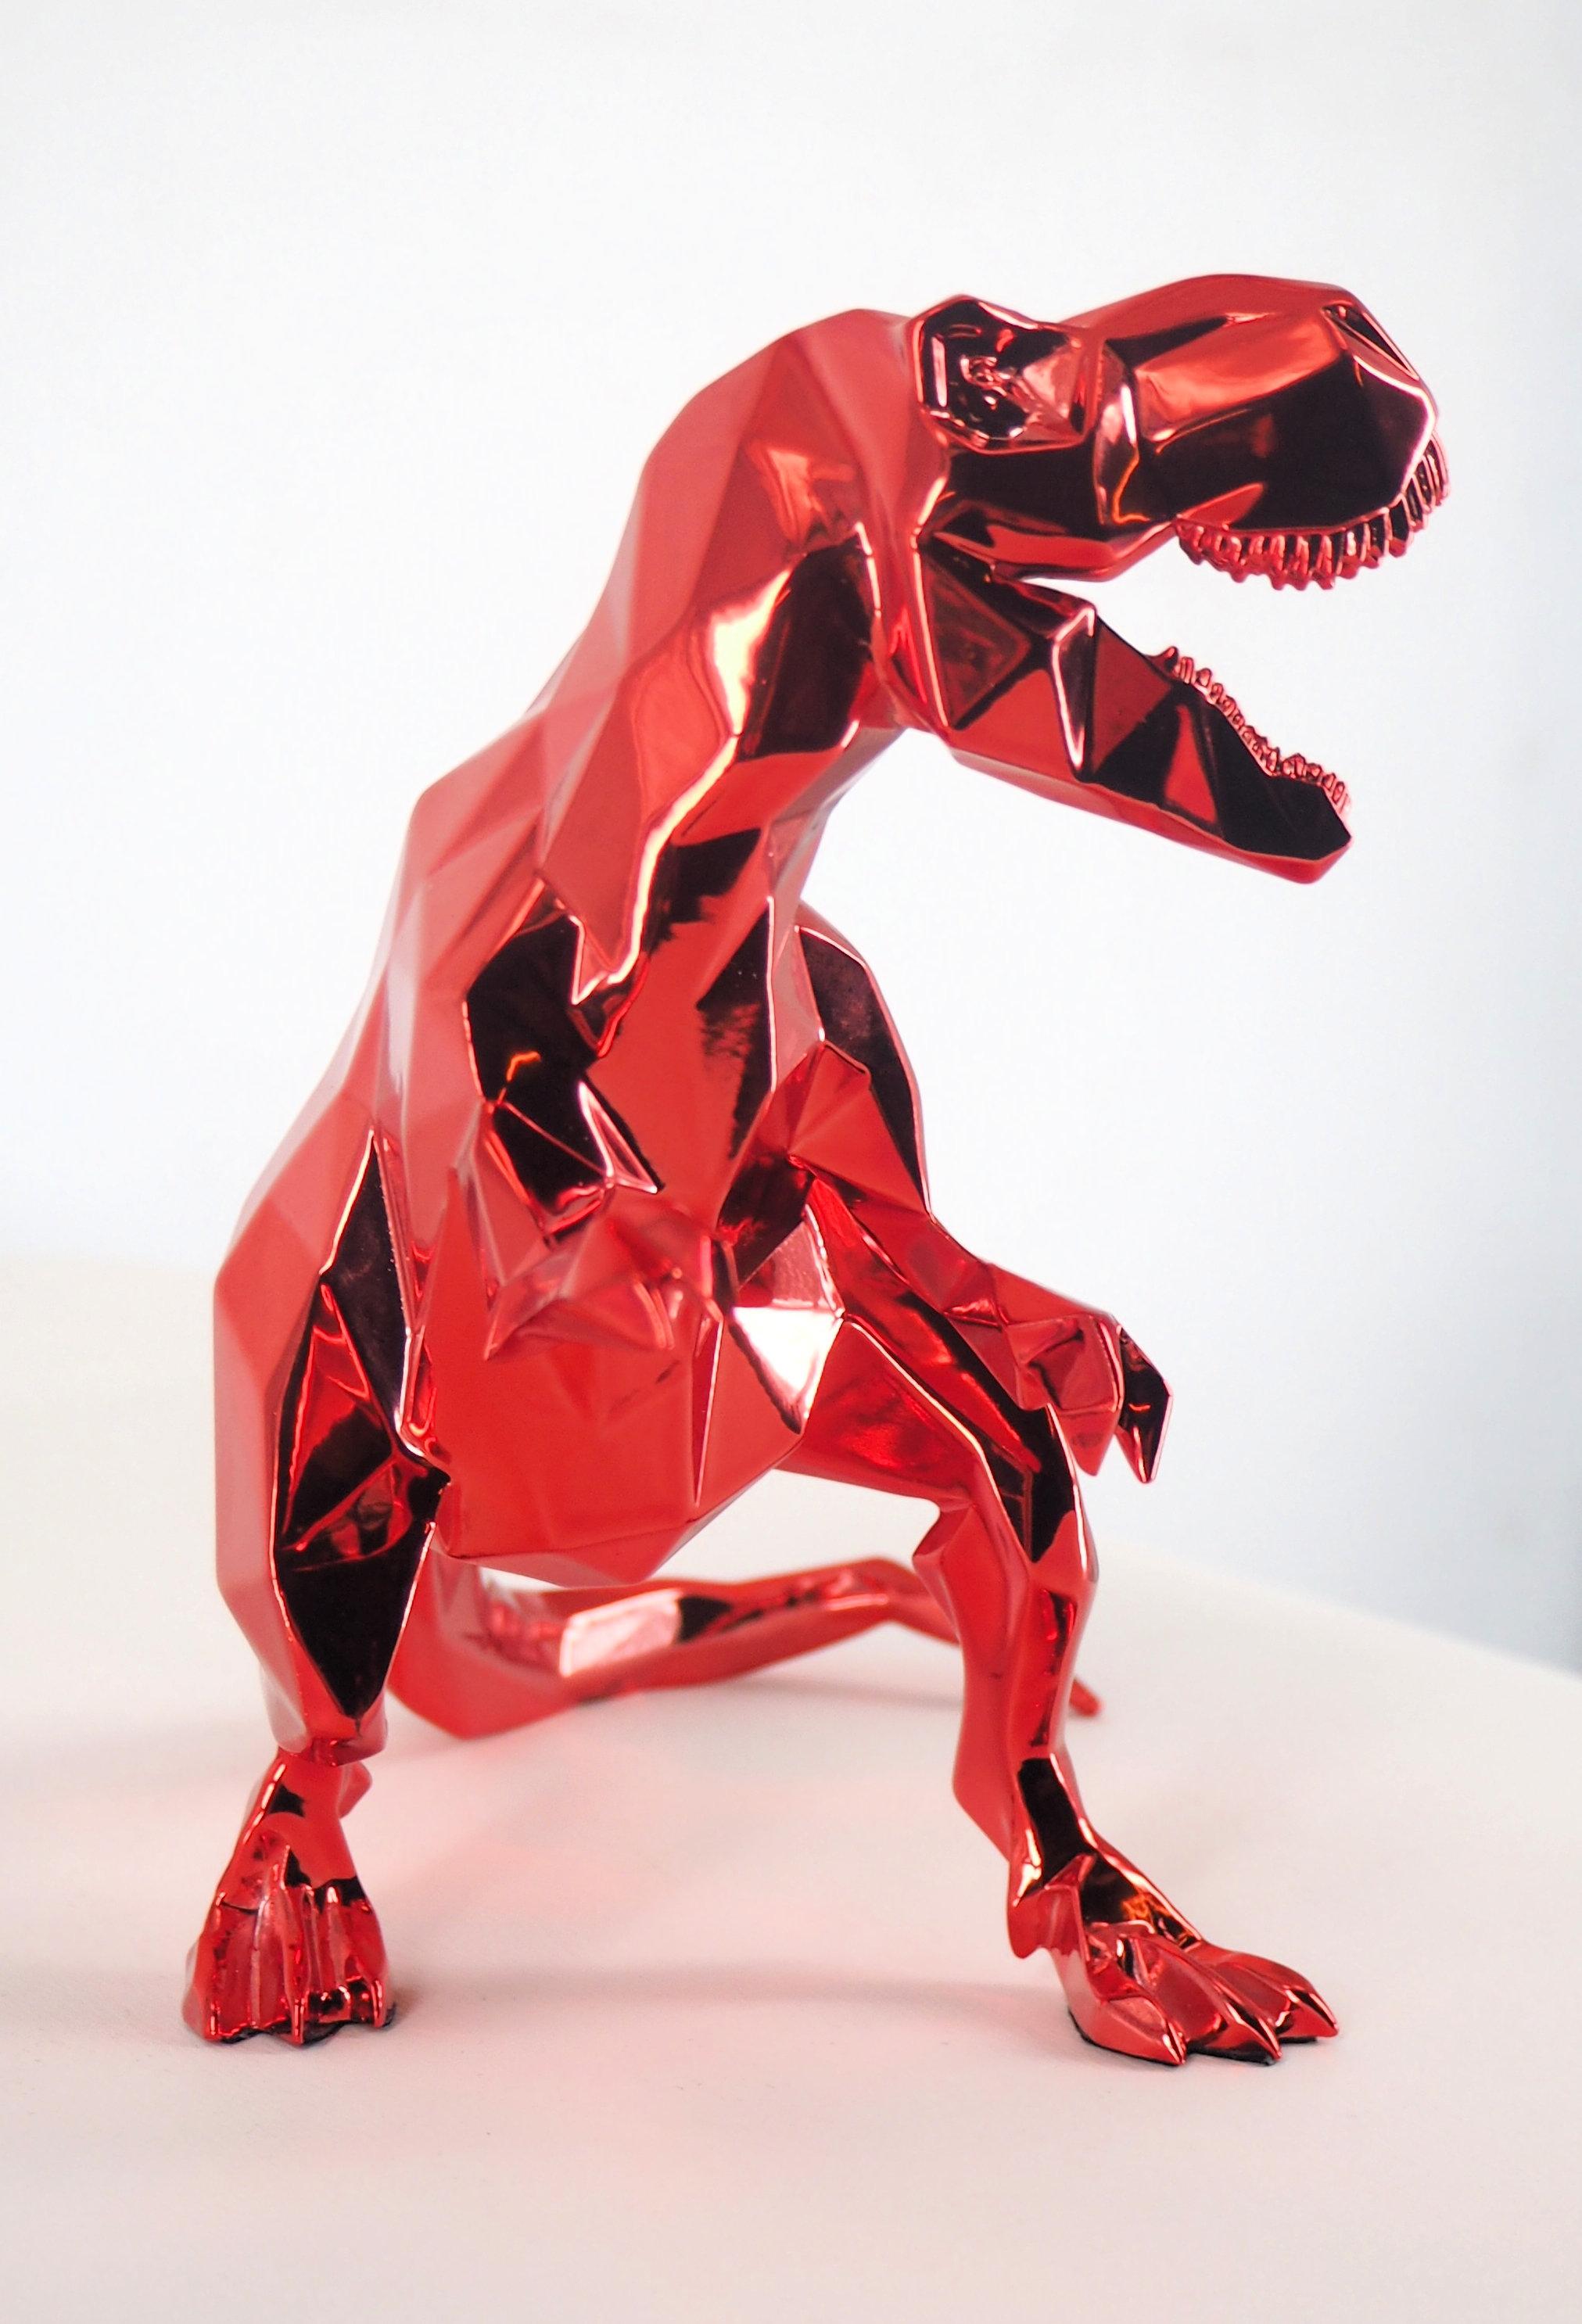 T-Rex  (Red) - Sculpture 1